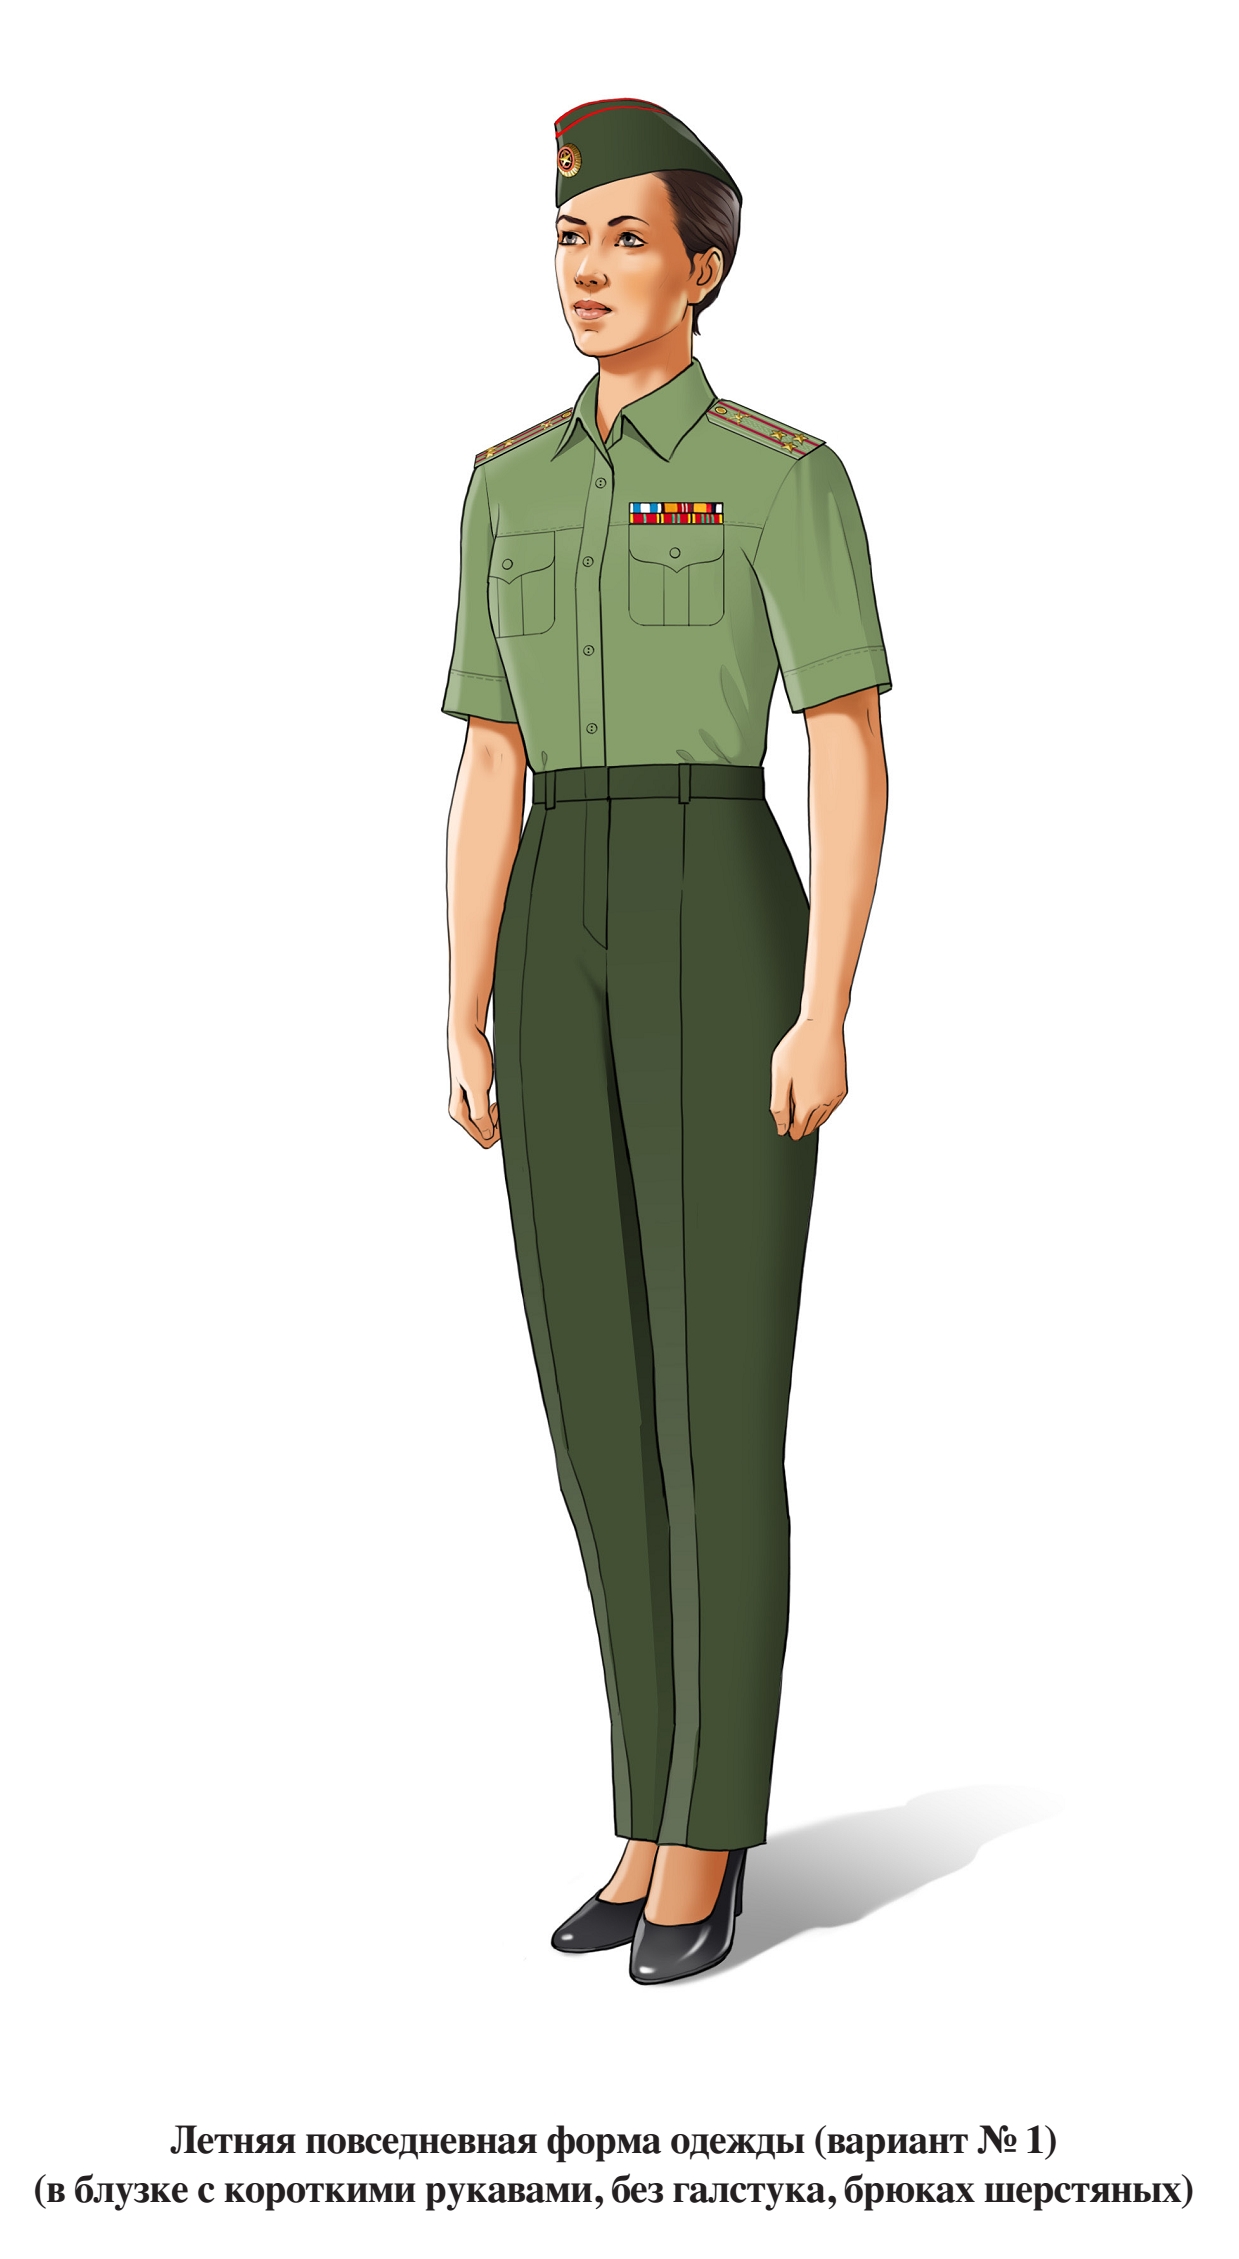 Летняя повседневная форма военнослужащих женского пола, в брюках и блузке с коротким рукавом, без галстука